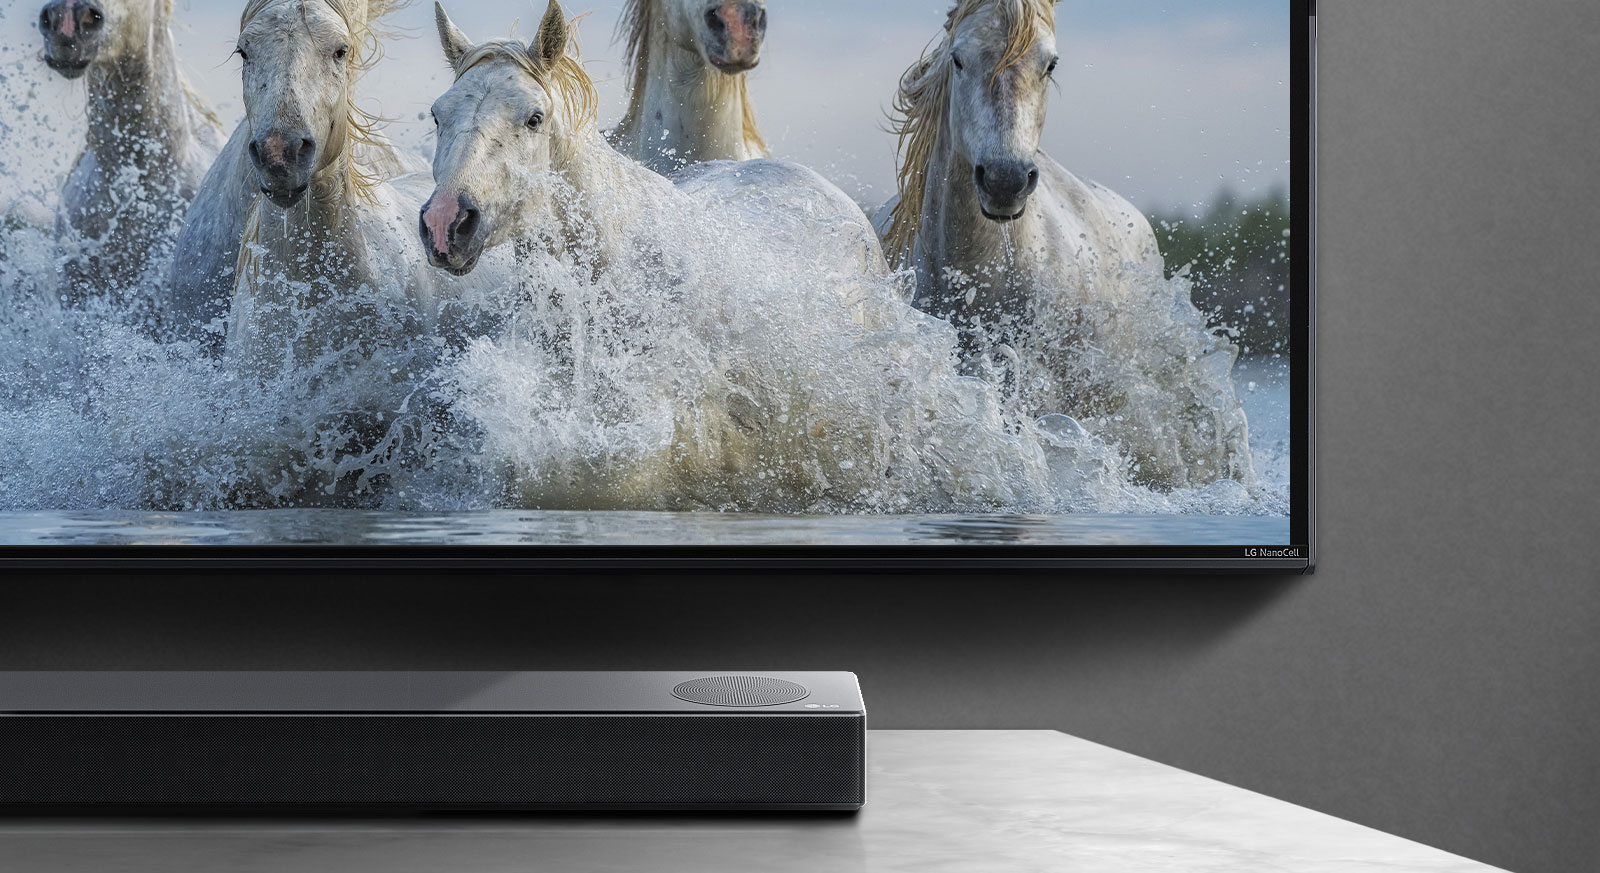 Jumătate din partea de jos a ecranului și jumătate din bara de sunet. Pe televizor sunt prezentați cai albi care aleargă deasupra apei.